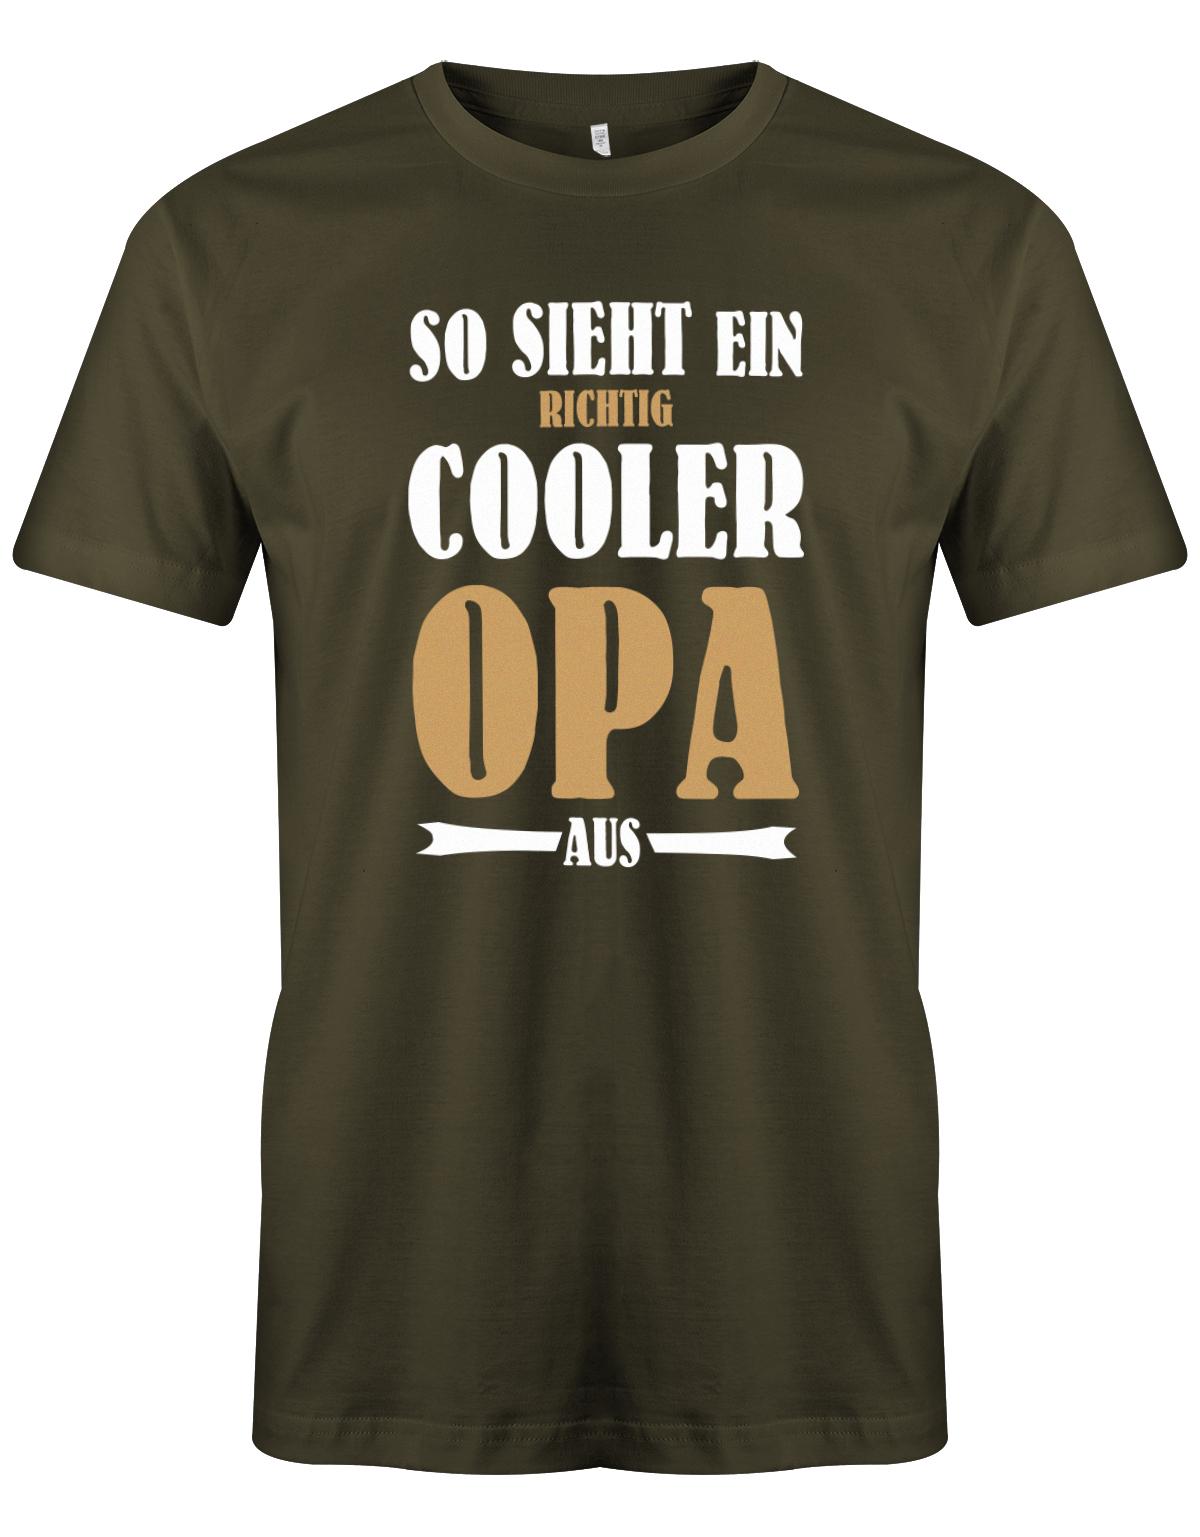 So-sieht-ein-richtig-cooler-Opa-aus-herren-Shirt-army